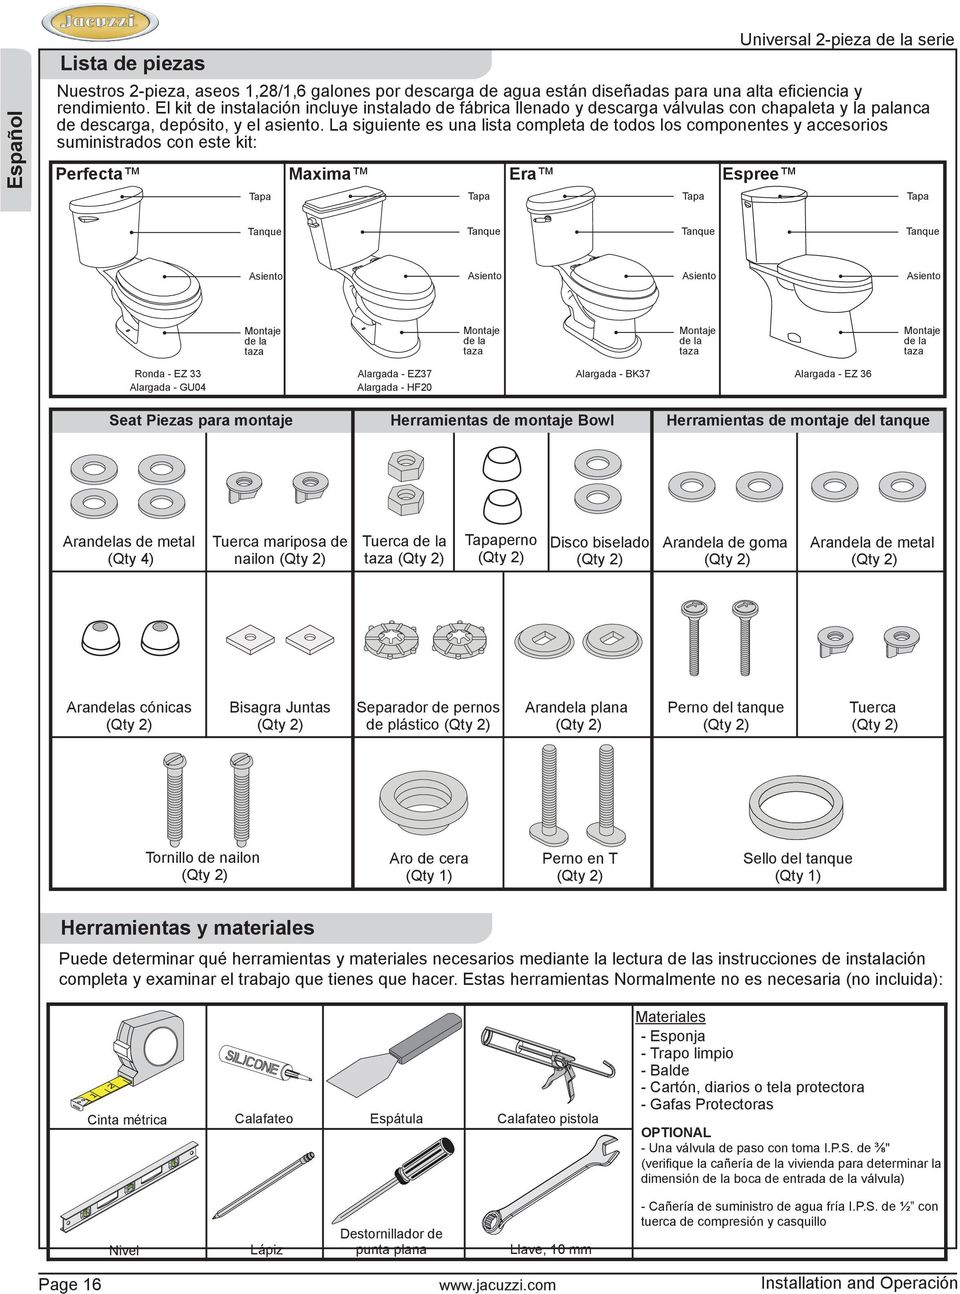 La siguiente es una lista completa de todos los componentes y accesorios suministrados con este kit: Perfecta Maxima Era Espree Tapa Tapa Tapa Tapa Tanque Tanque Tanque Tanque Asiento Asiento Asiento